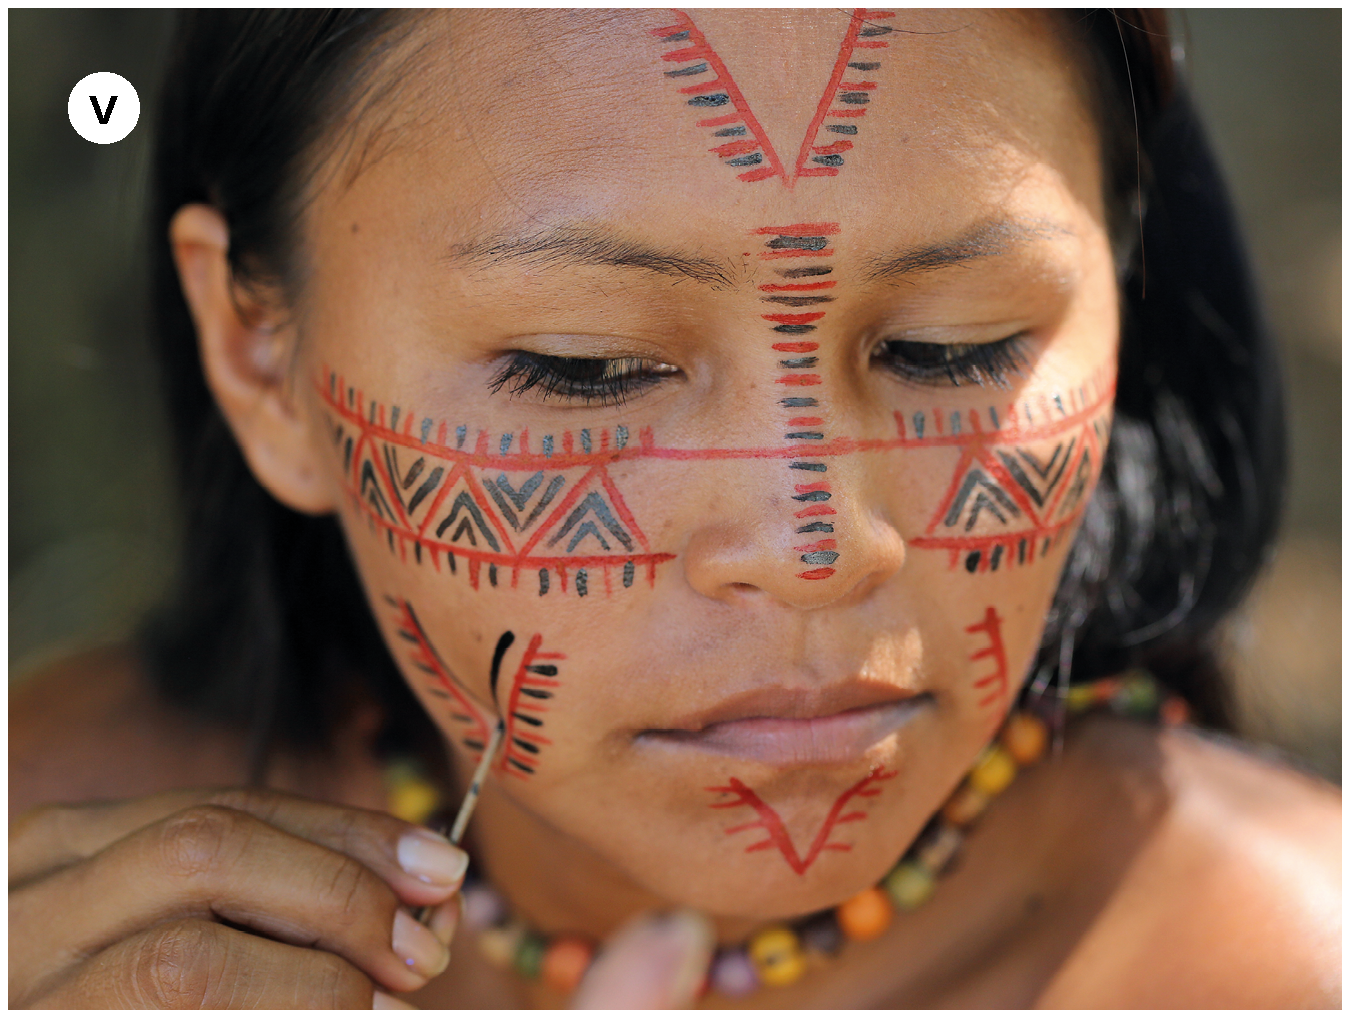 Fotografia. Número cinco. Menina indígena fazendo pintura em seu rosto com a ajuda de um graveto fino na mão direita. Os desenhos são nas cores vermelha e preta e têm motivos geométricos.